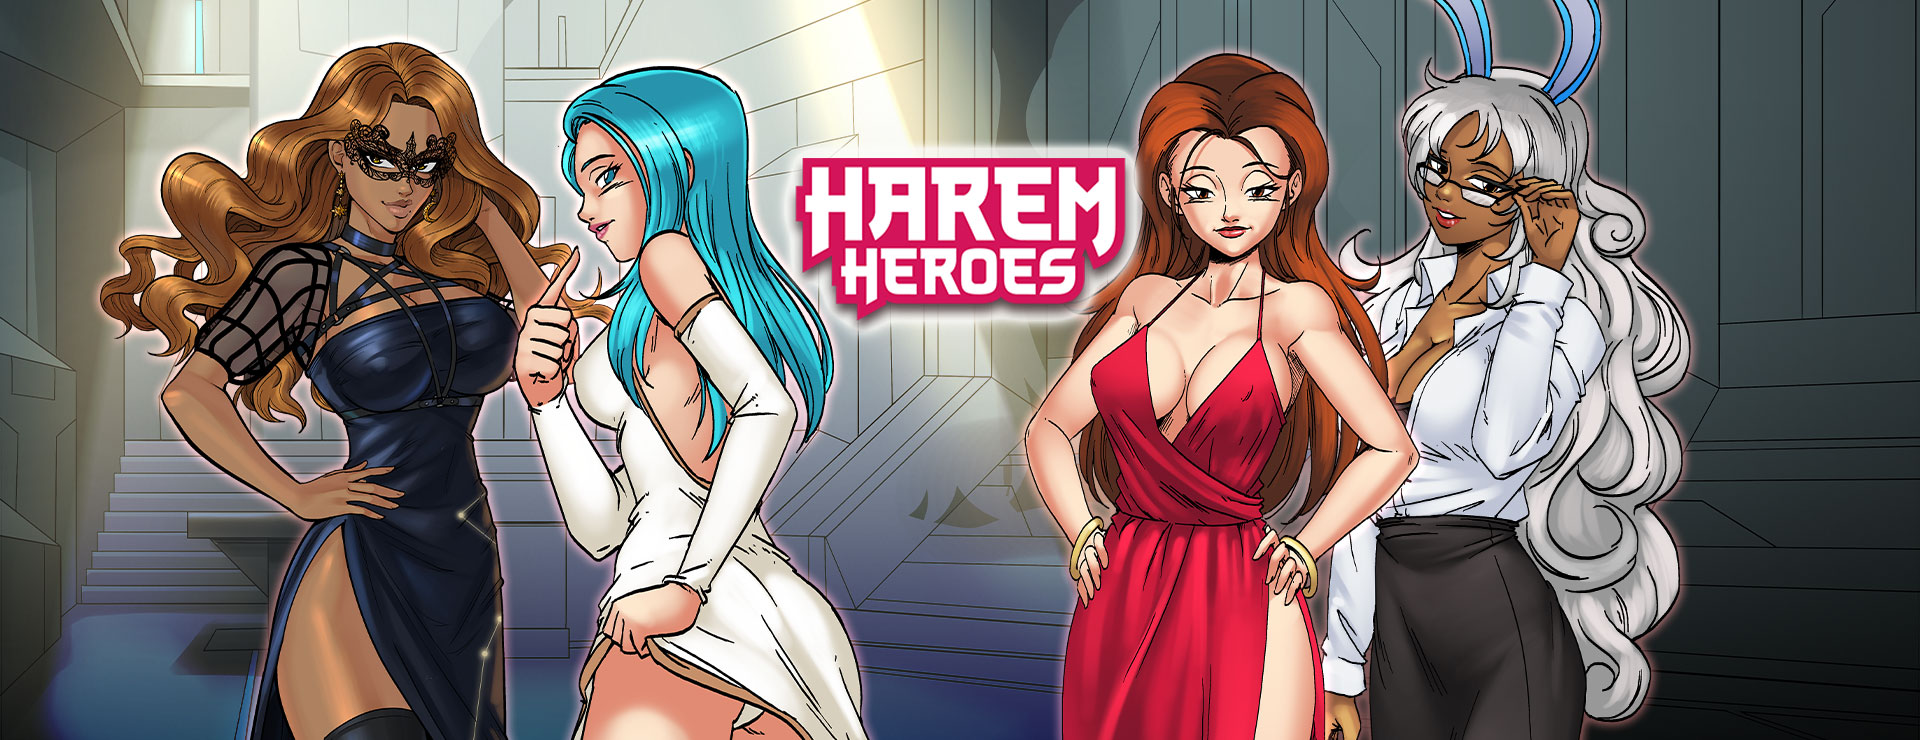 Harem Heroes Game - Przygodowa akcji Gra